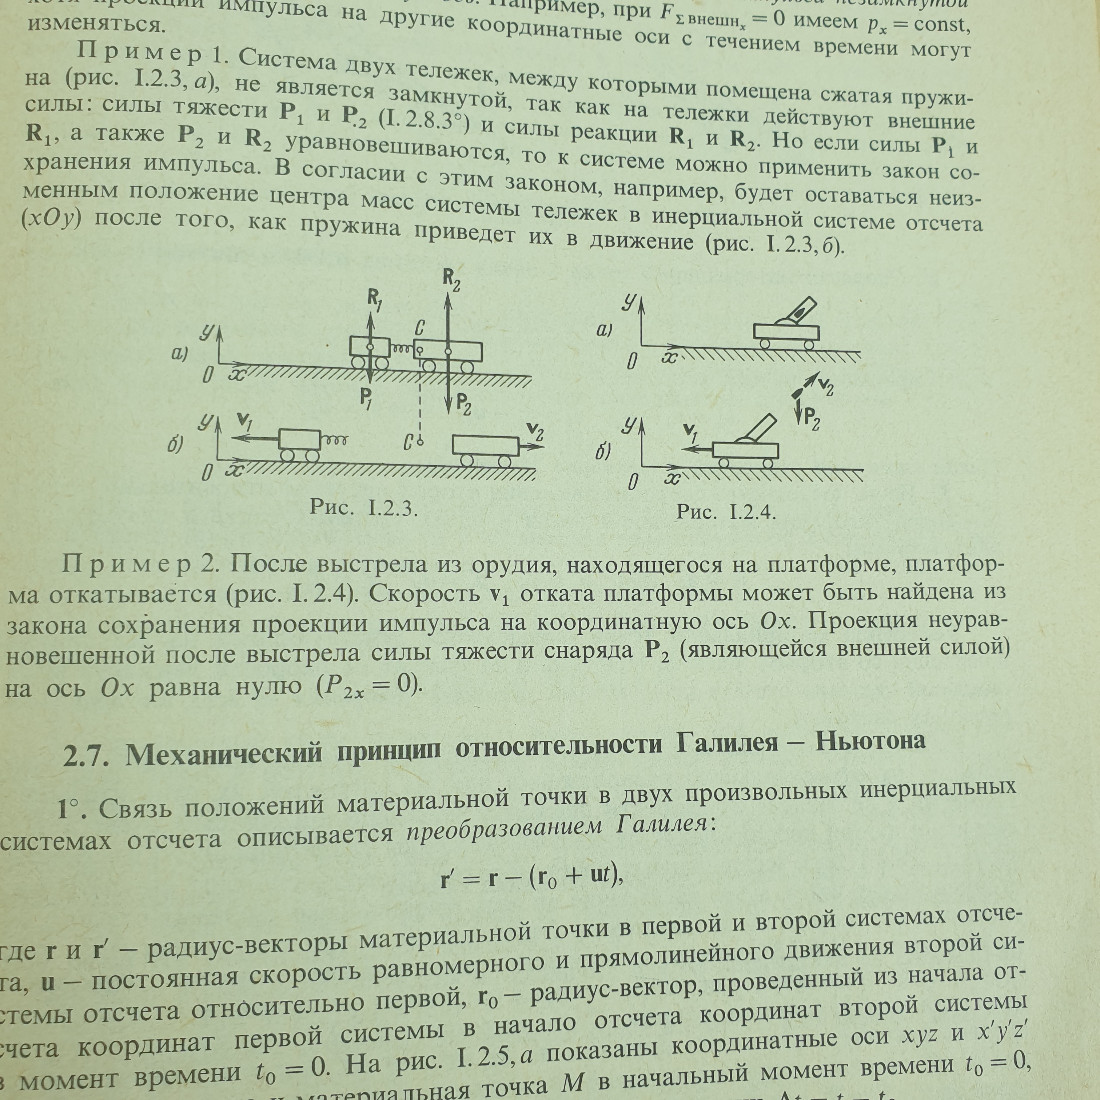 Б.М. Яворский, Ю.А. Селезнёв "Справочное руководство по физике". Картинка 9